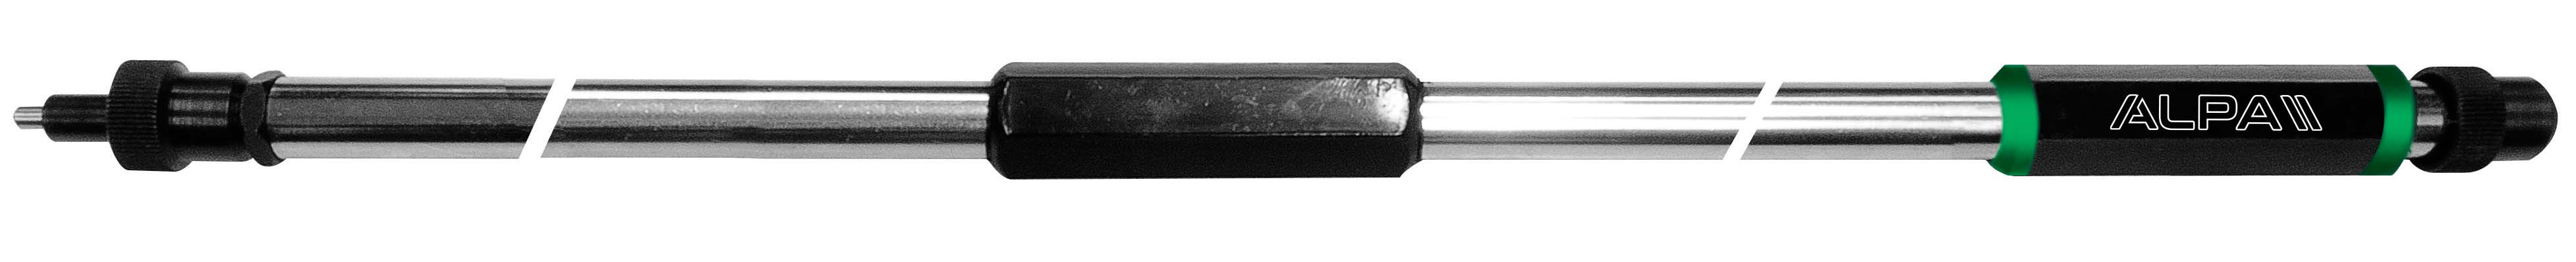 Afbeelding van Depht bore gauges extensions.-DA022